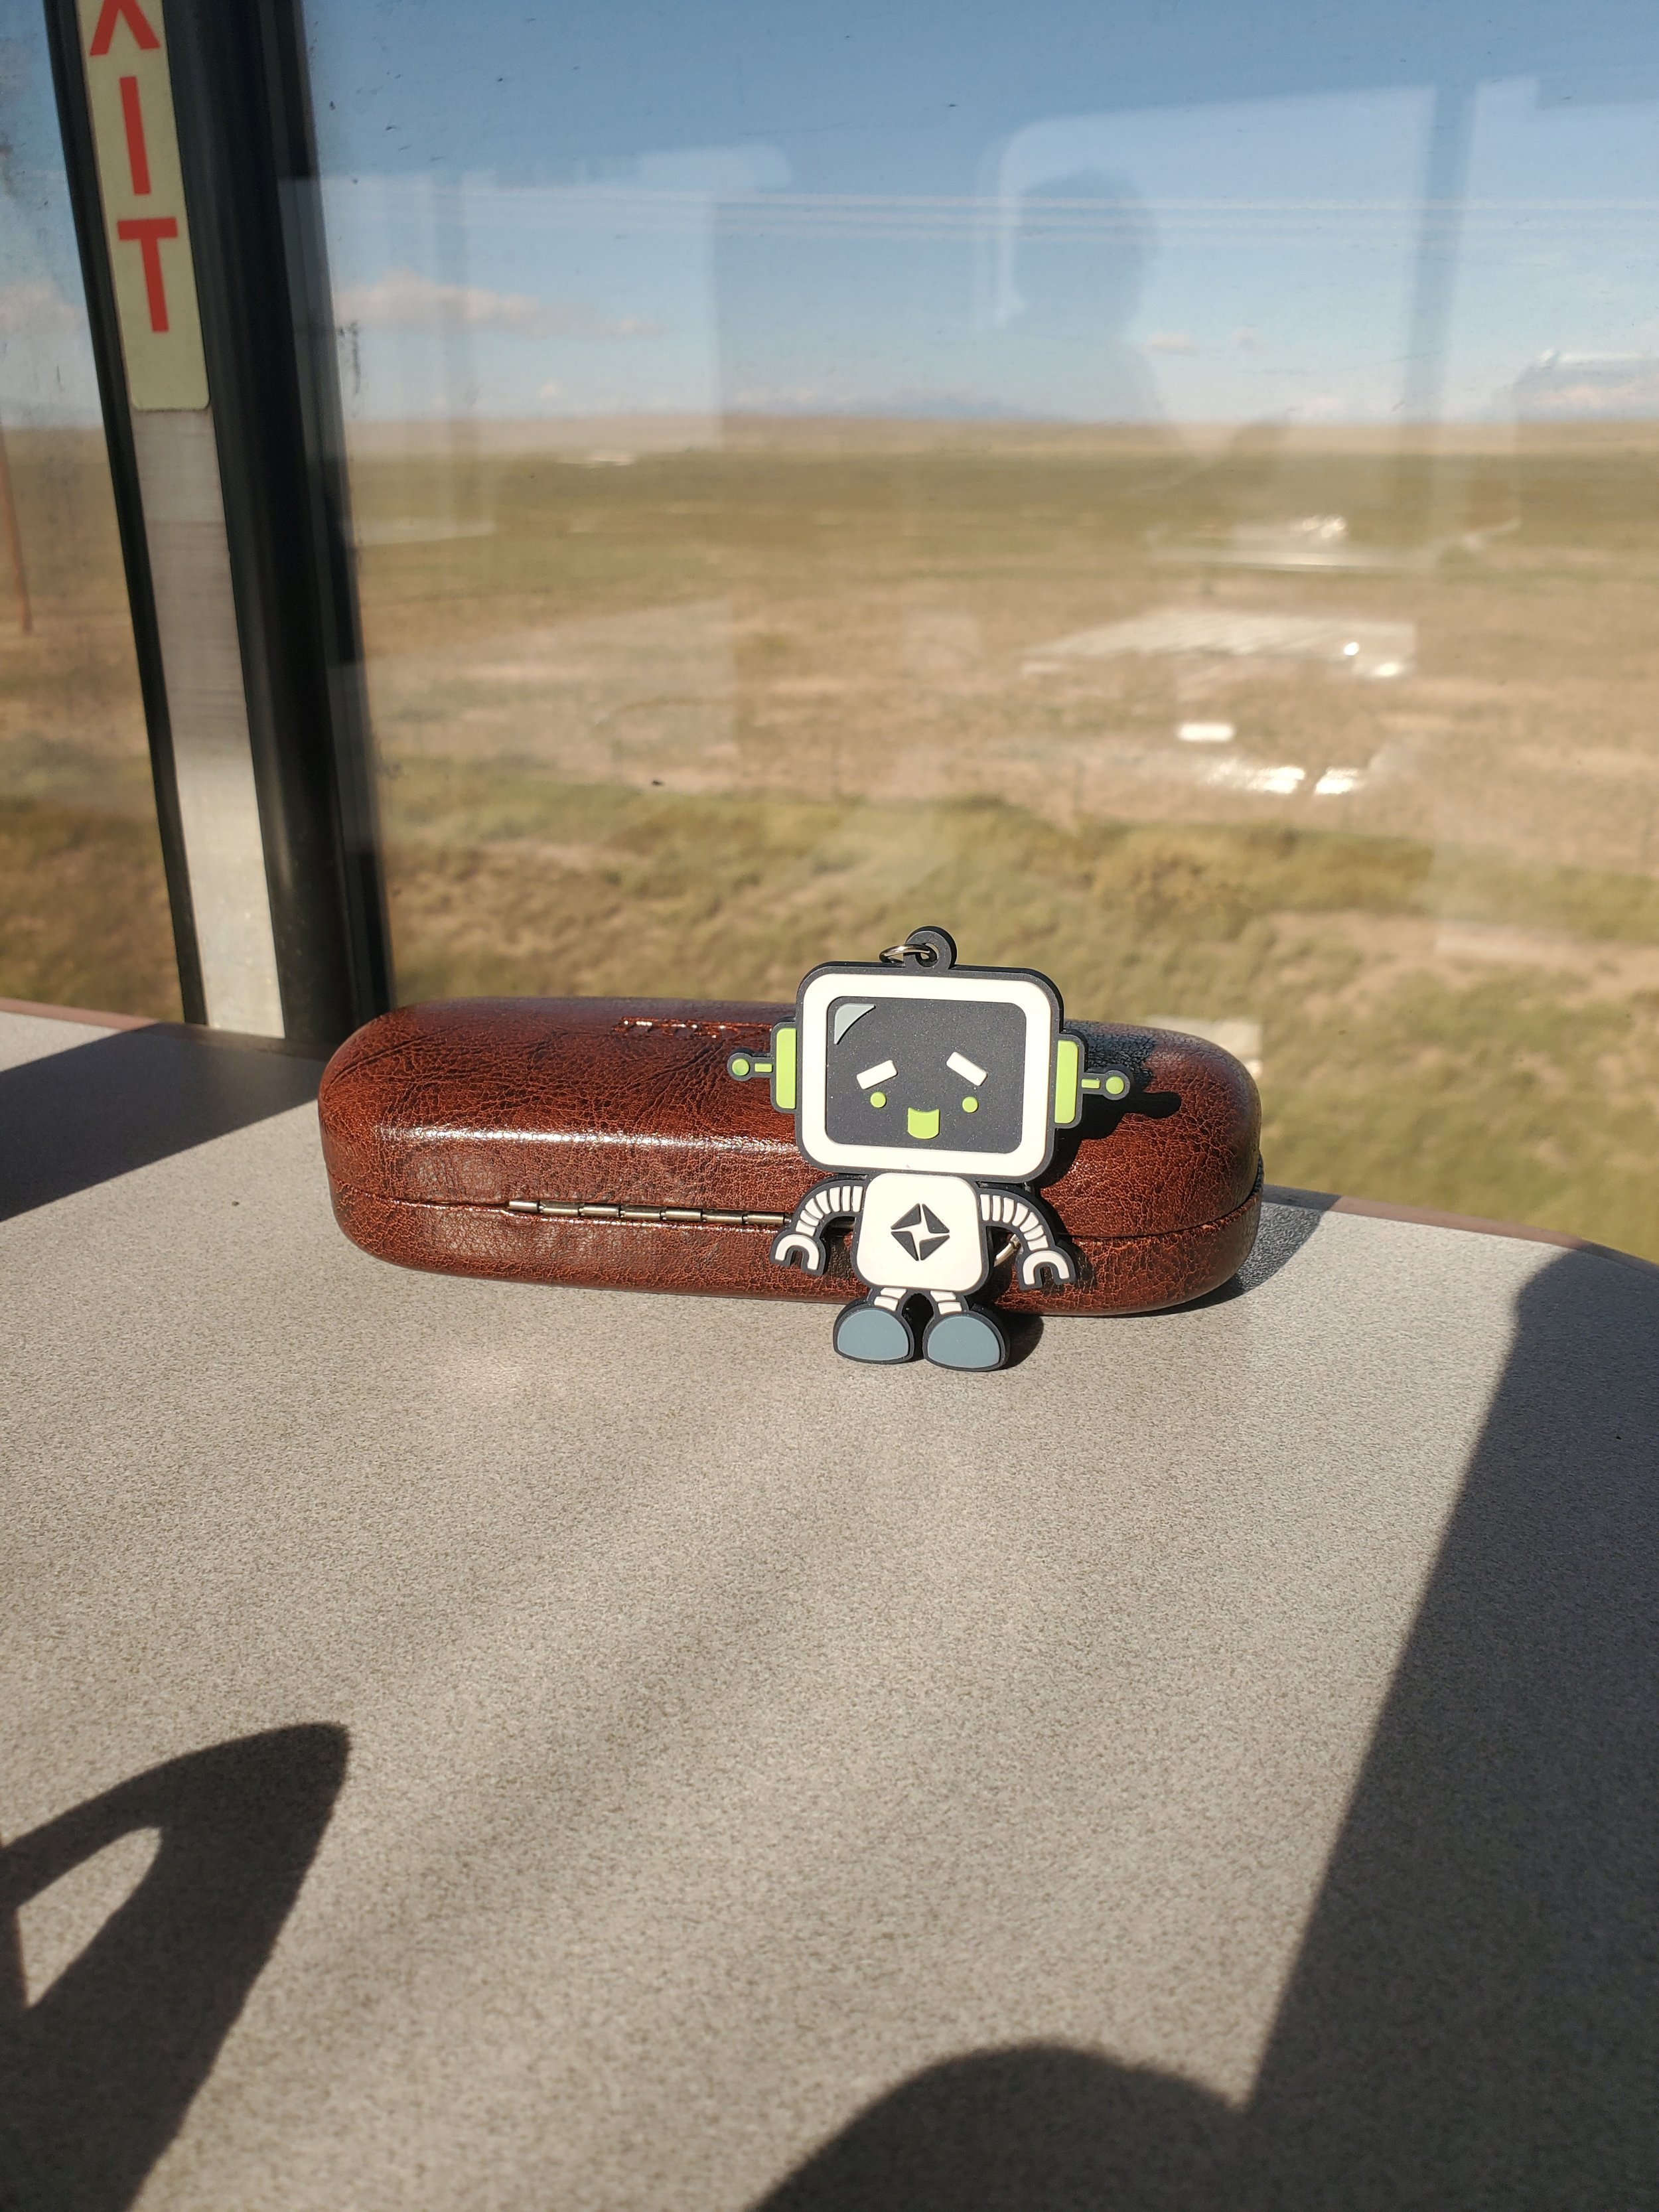 RoBert riding a train through New Mexico